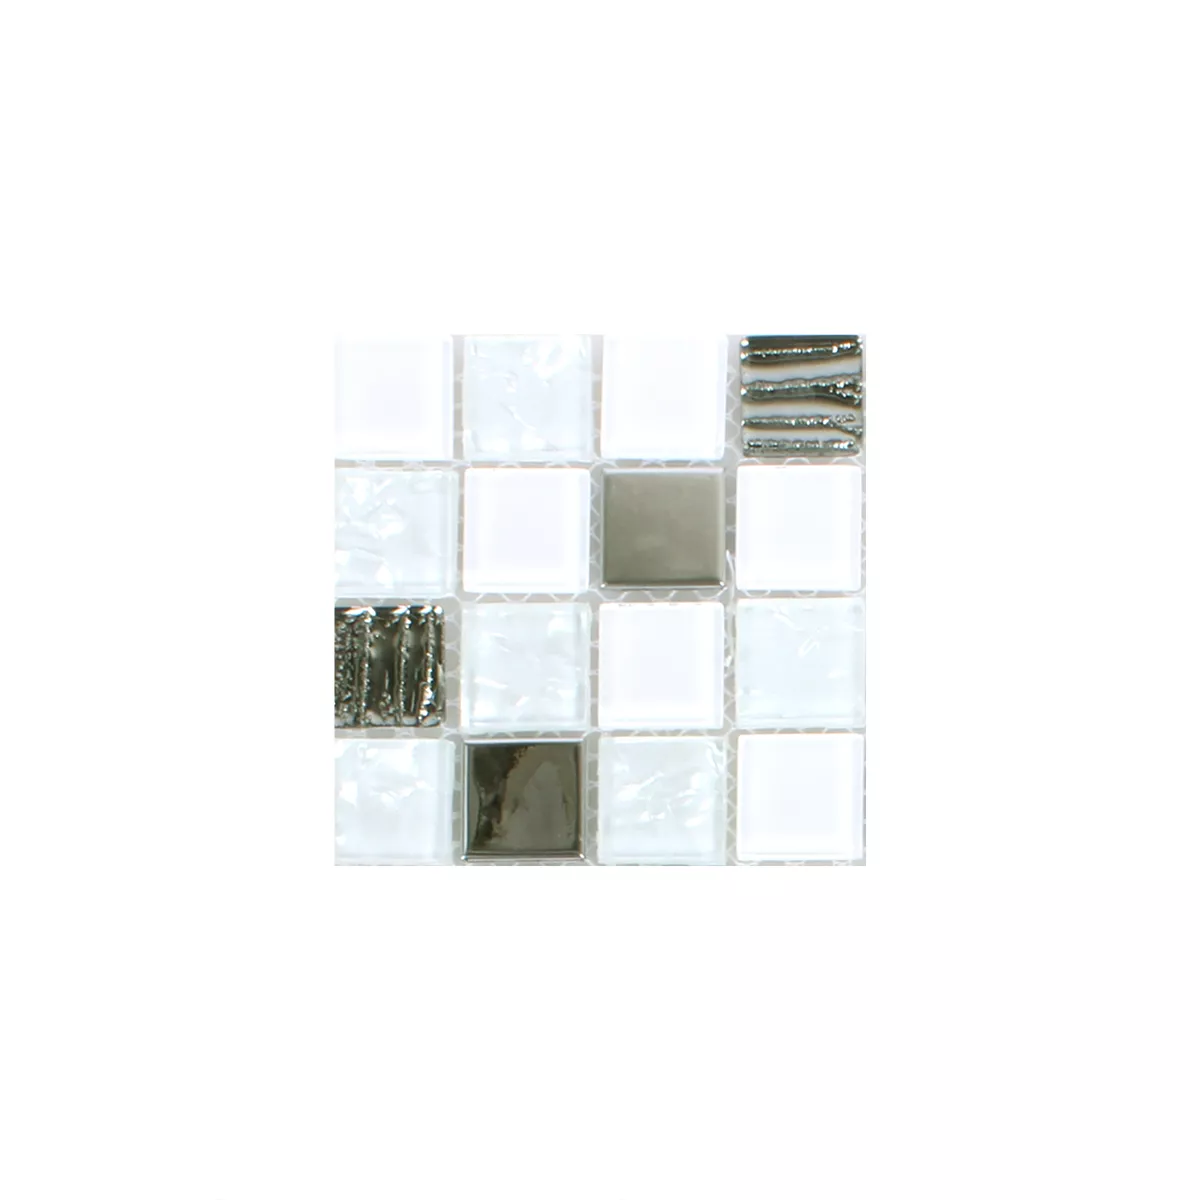 Sample Mosaic Tiles Admont White Diamant Quadrat